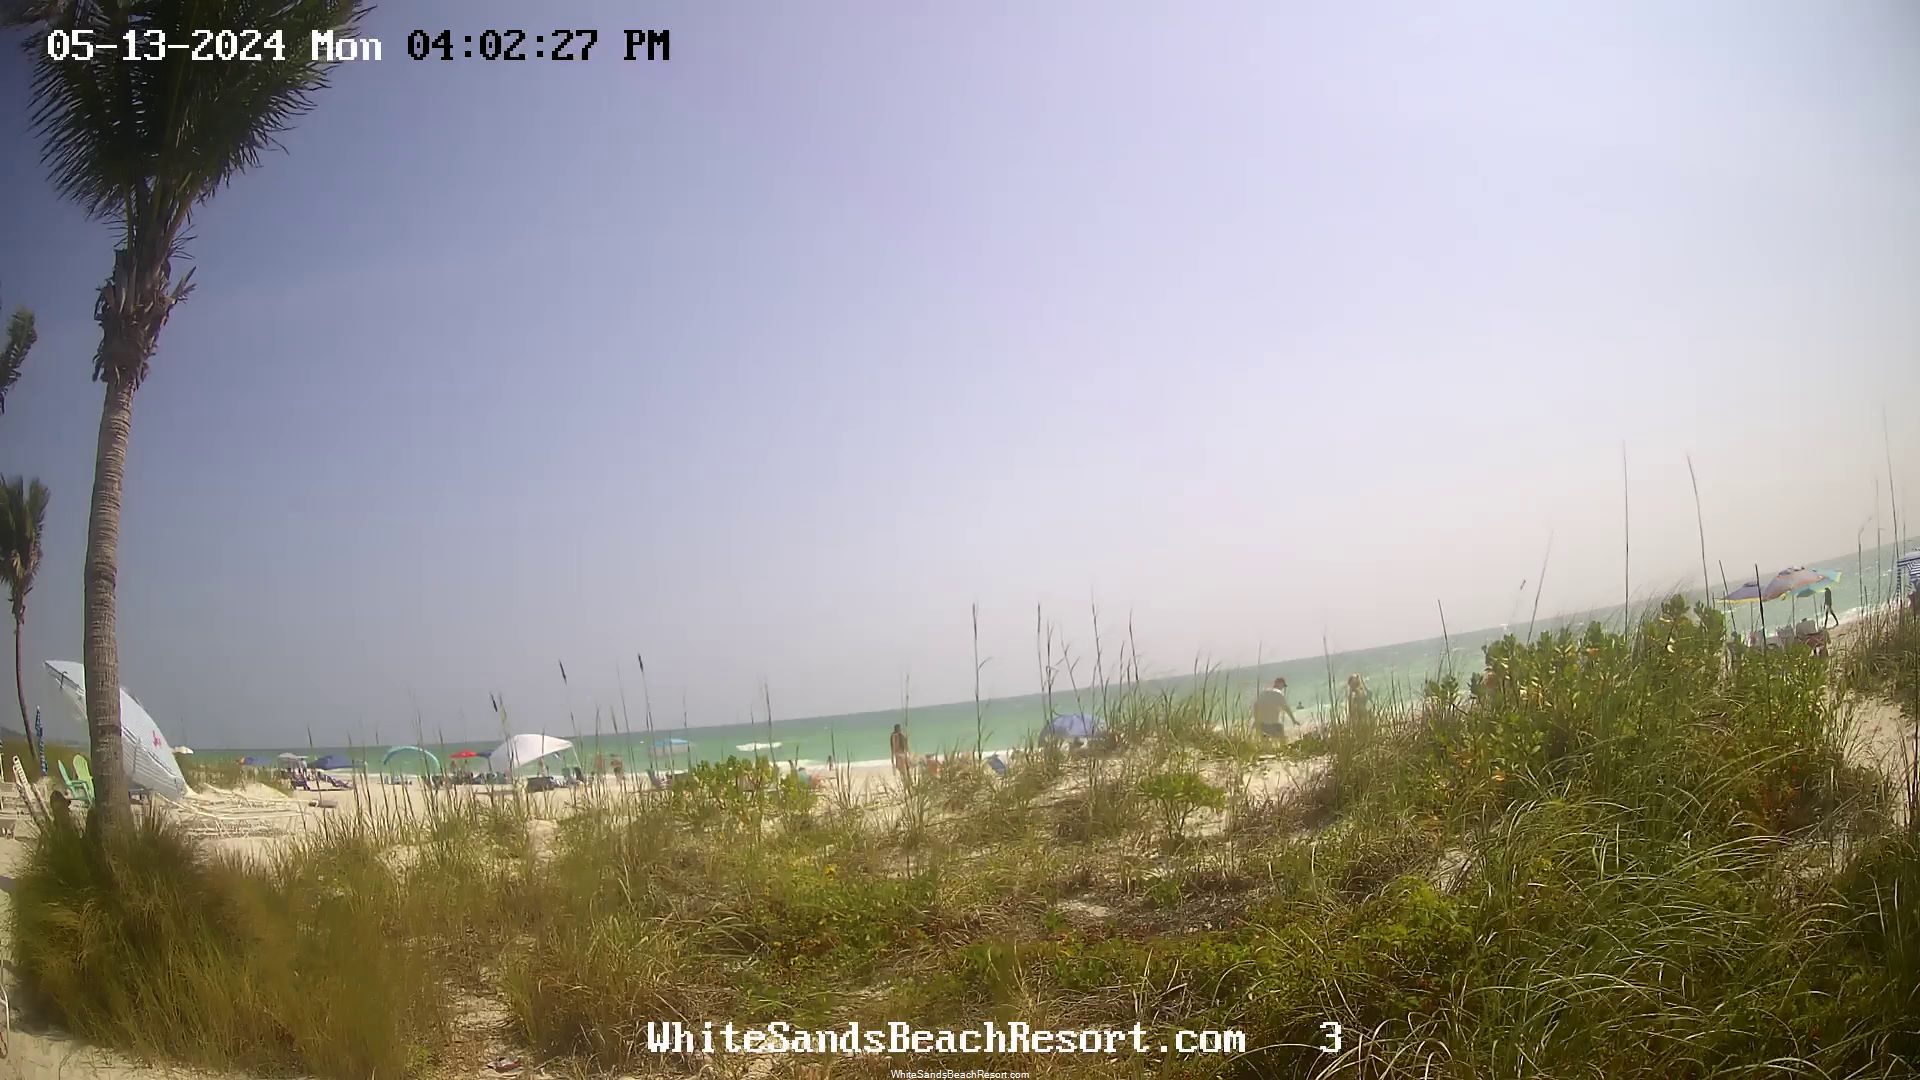 Holmes Beach, Florida Mo. 15:56